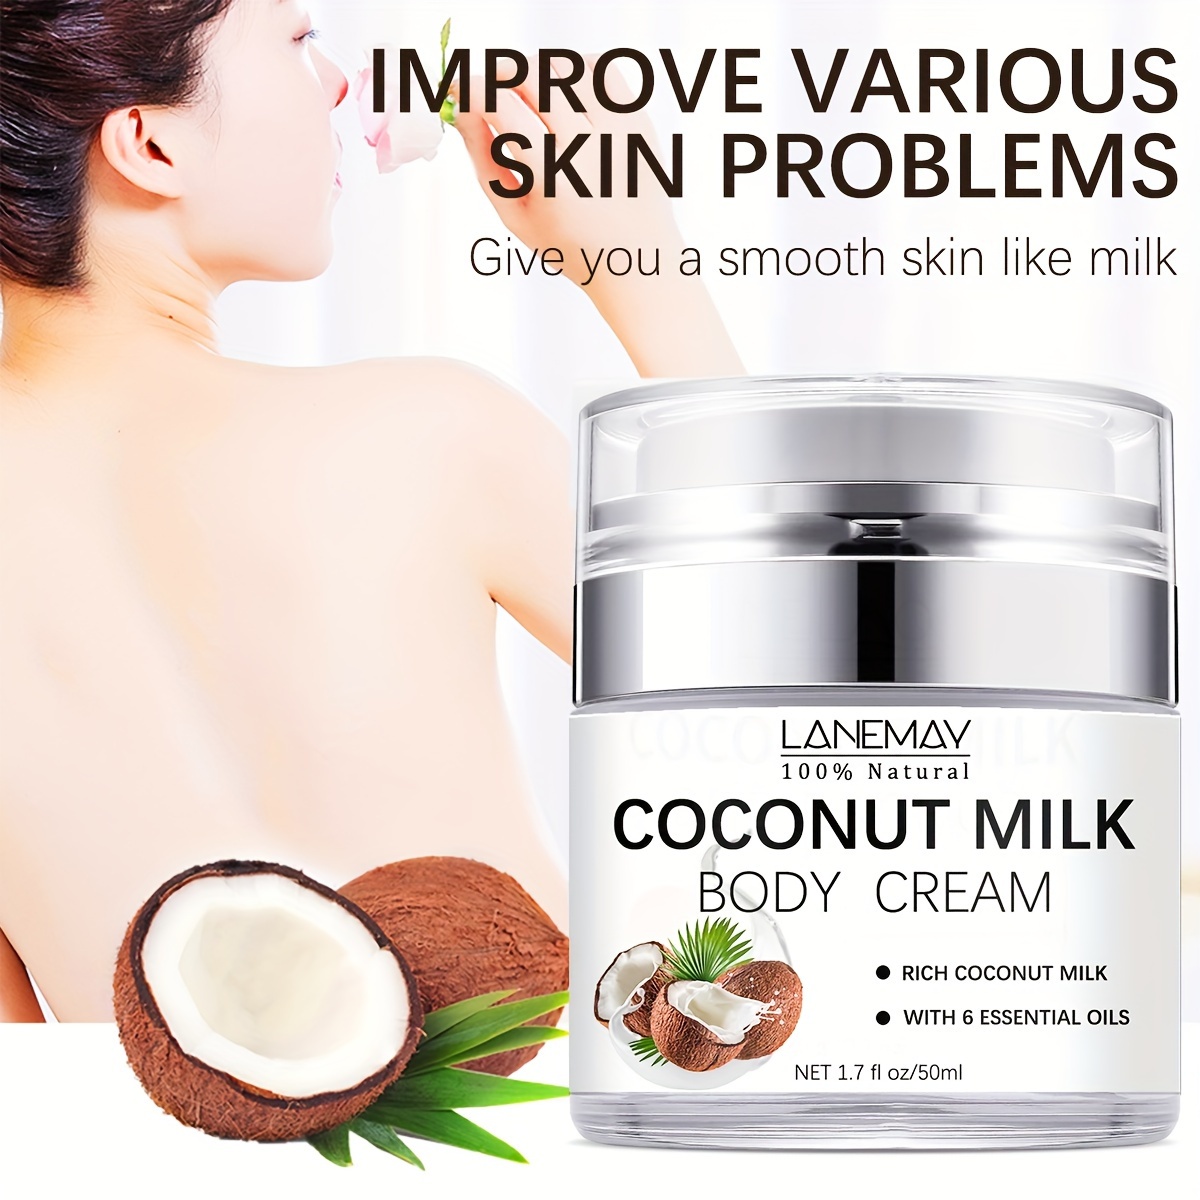 Coconut & Vanilla Body Oil ♡ – Miss Fortune